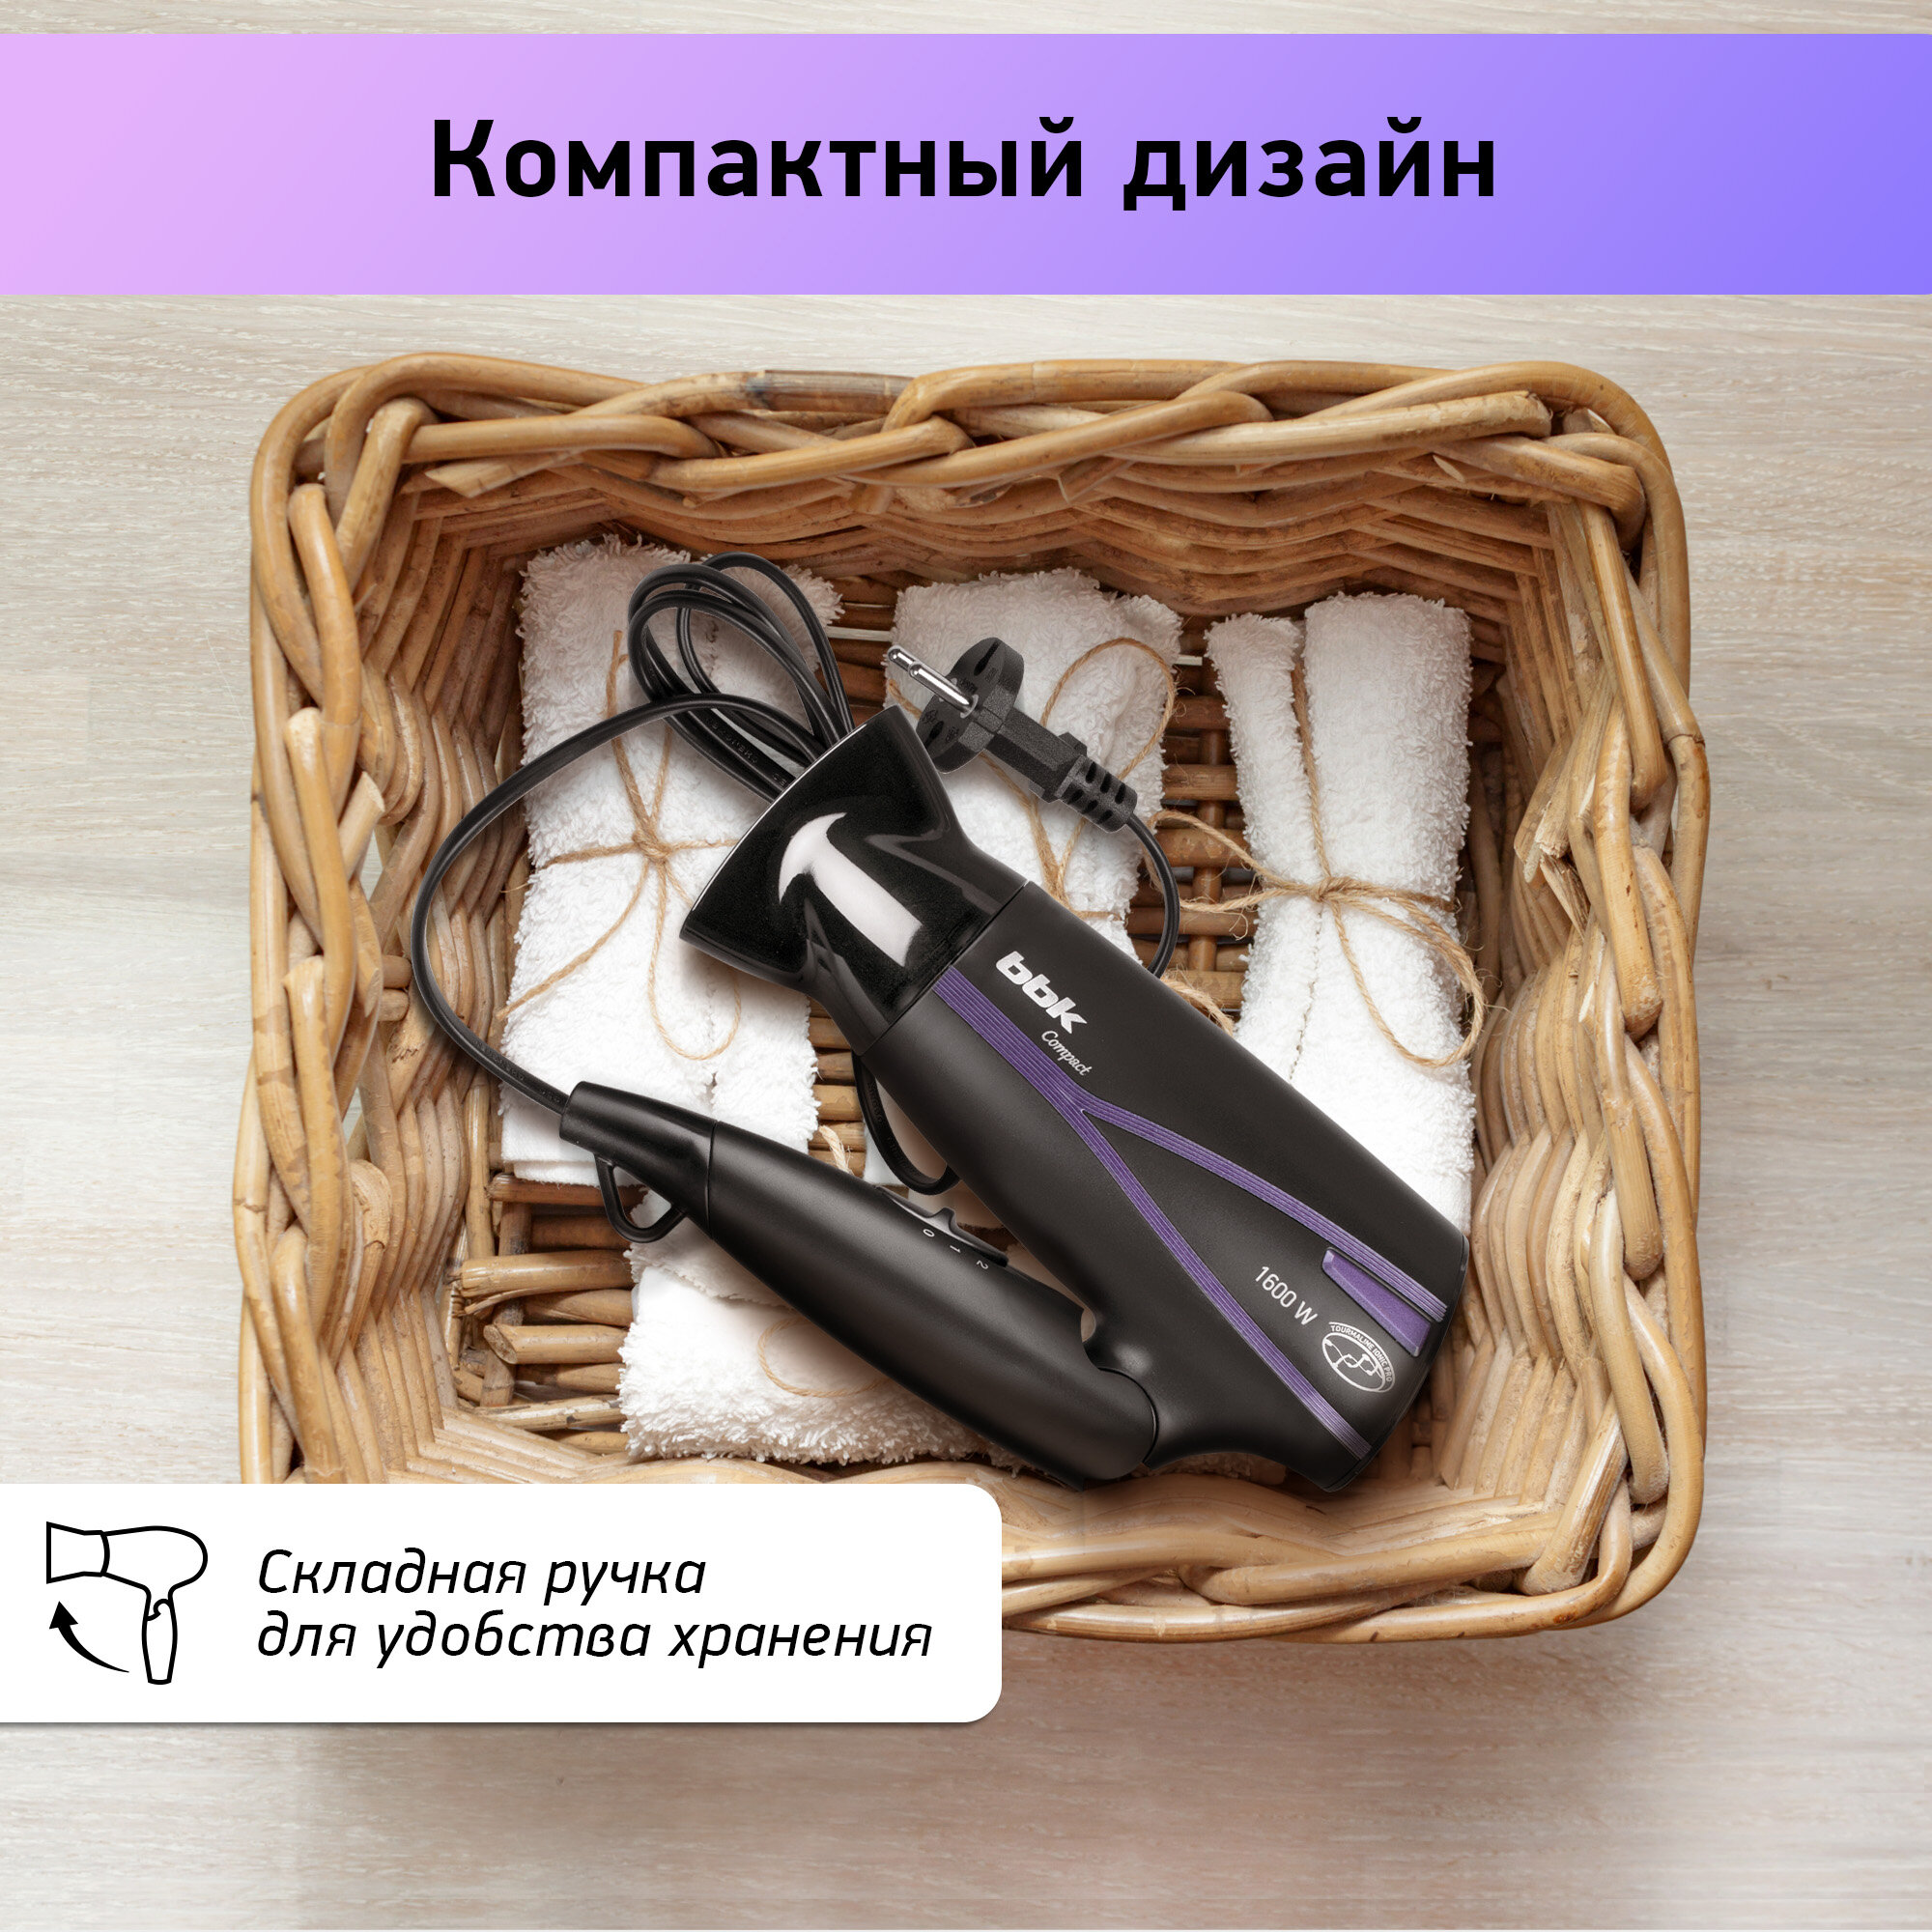 Фен для волос BBK BHD1608i черный/фиолетовый, мощность 1600 Вт, складная ручка